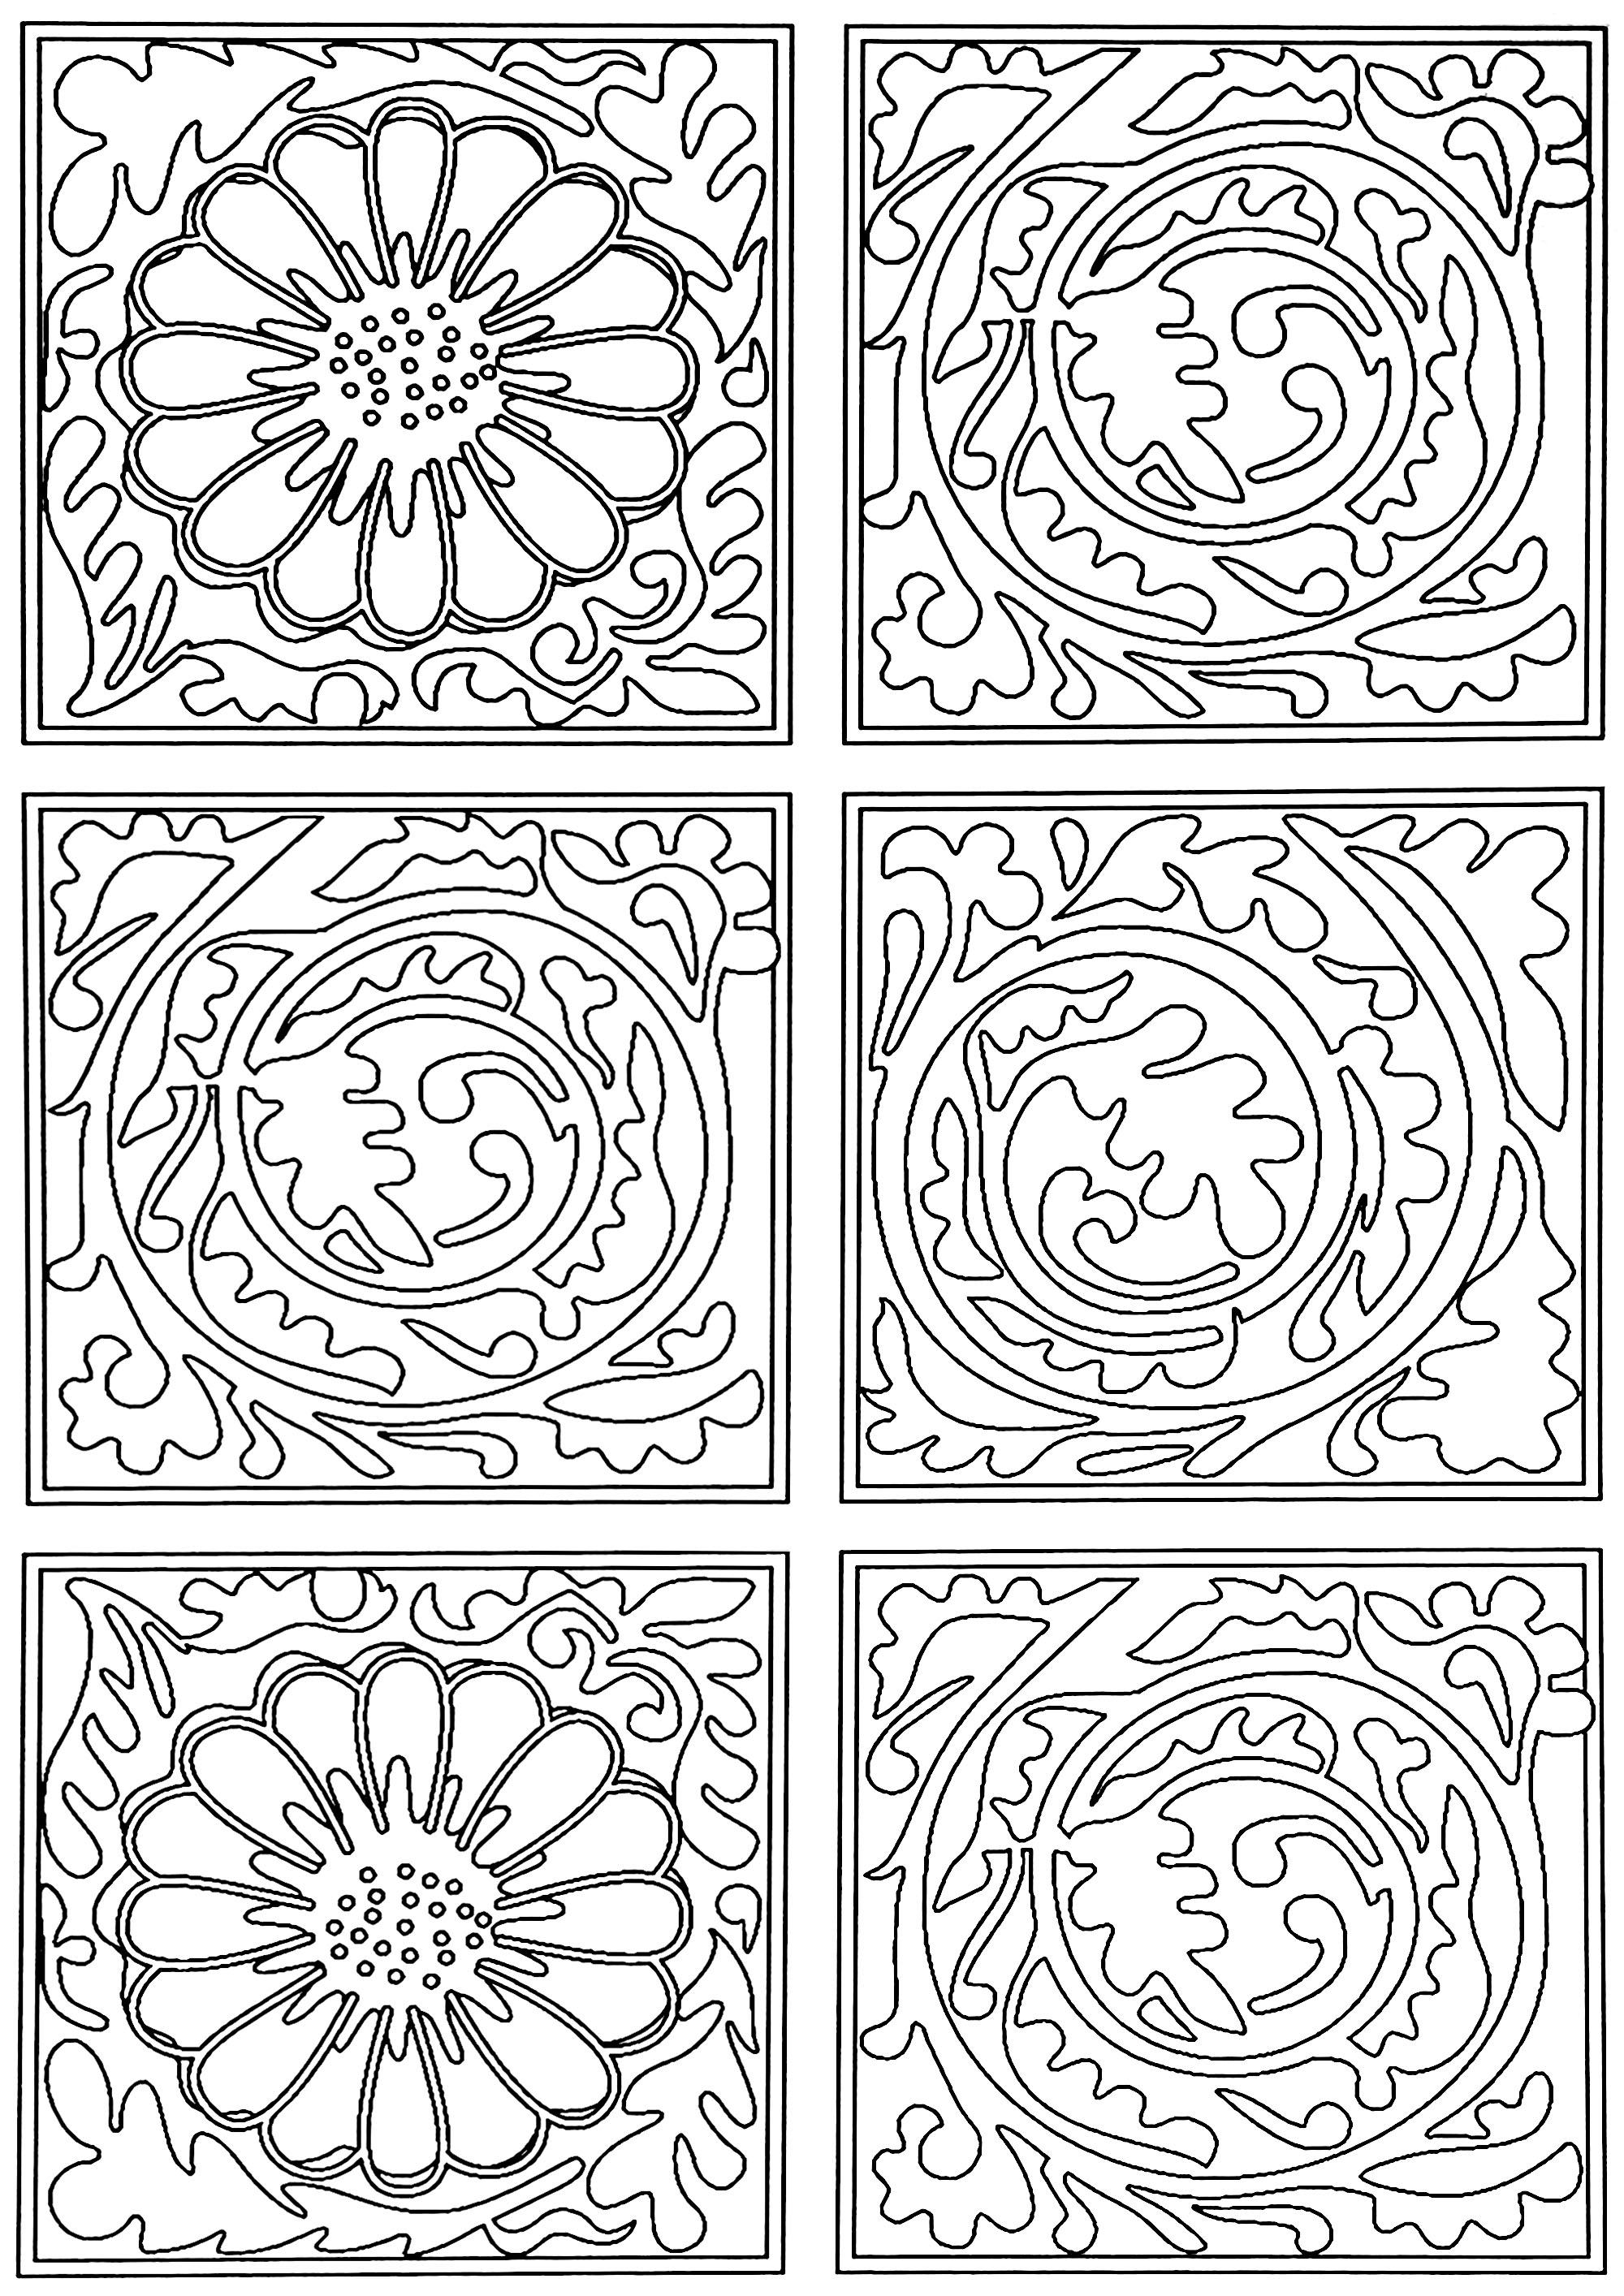 Pagina da colorare creata a partire dal modello di carta da parati creato da William Morris: 'Diaper' nel 1870. Questo motivo è composto da quadrati contenenti volute di foglie, intervallati da quadrati contenenti fiori.